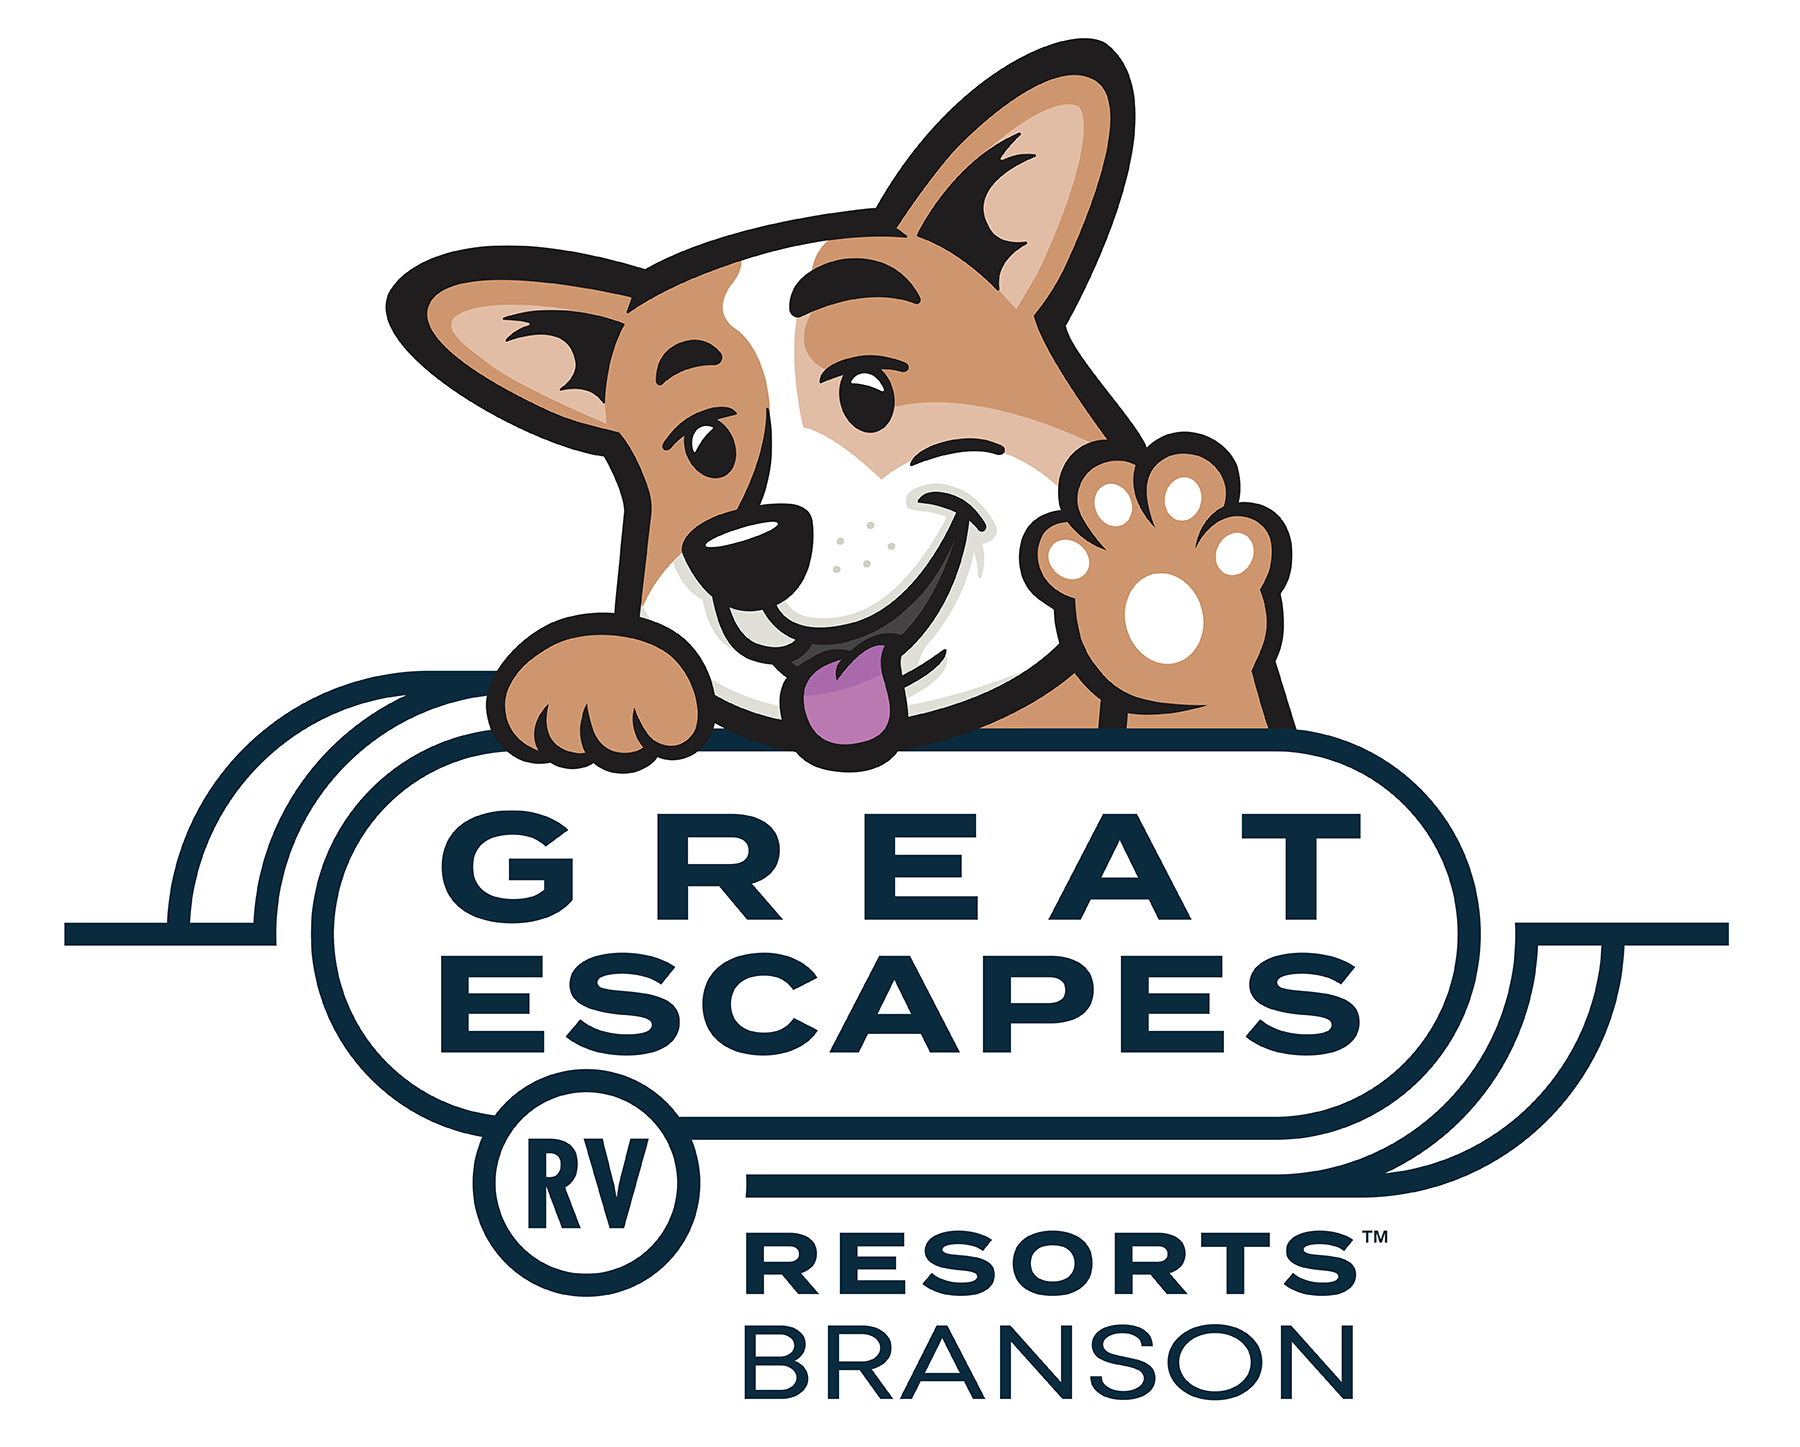 Great Escapes RV Resorts Branson